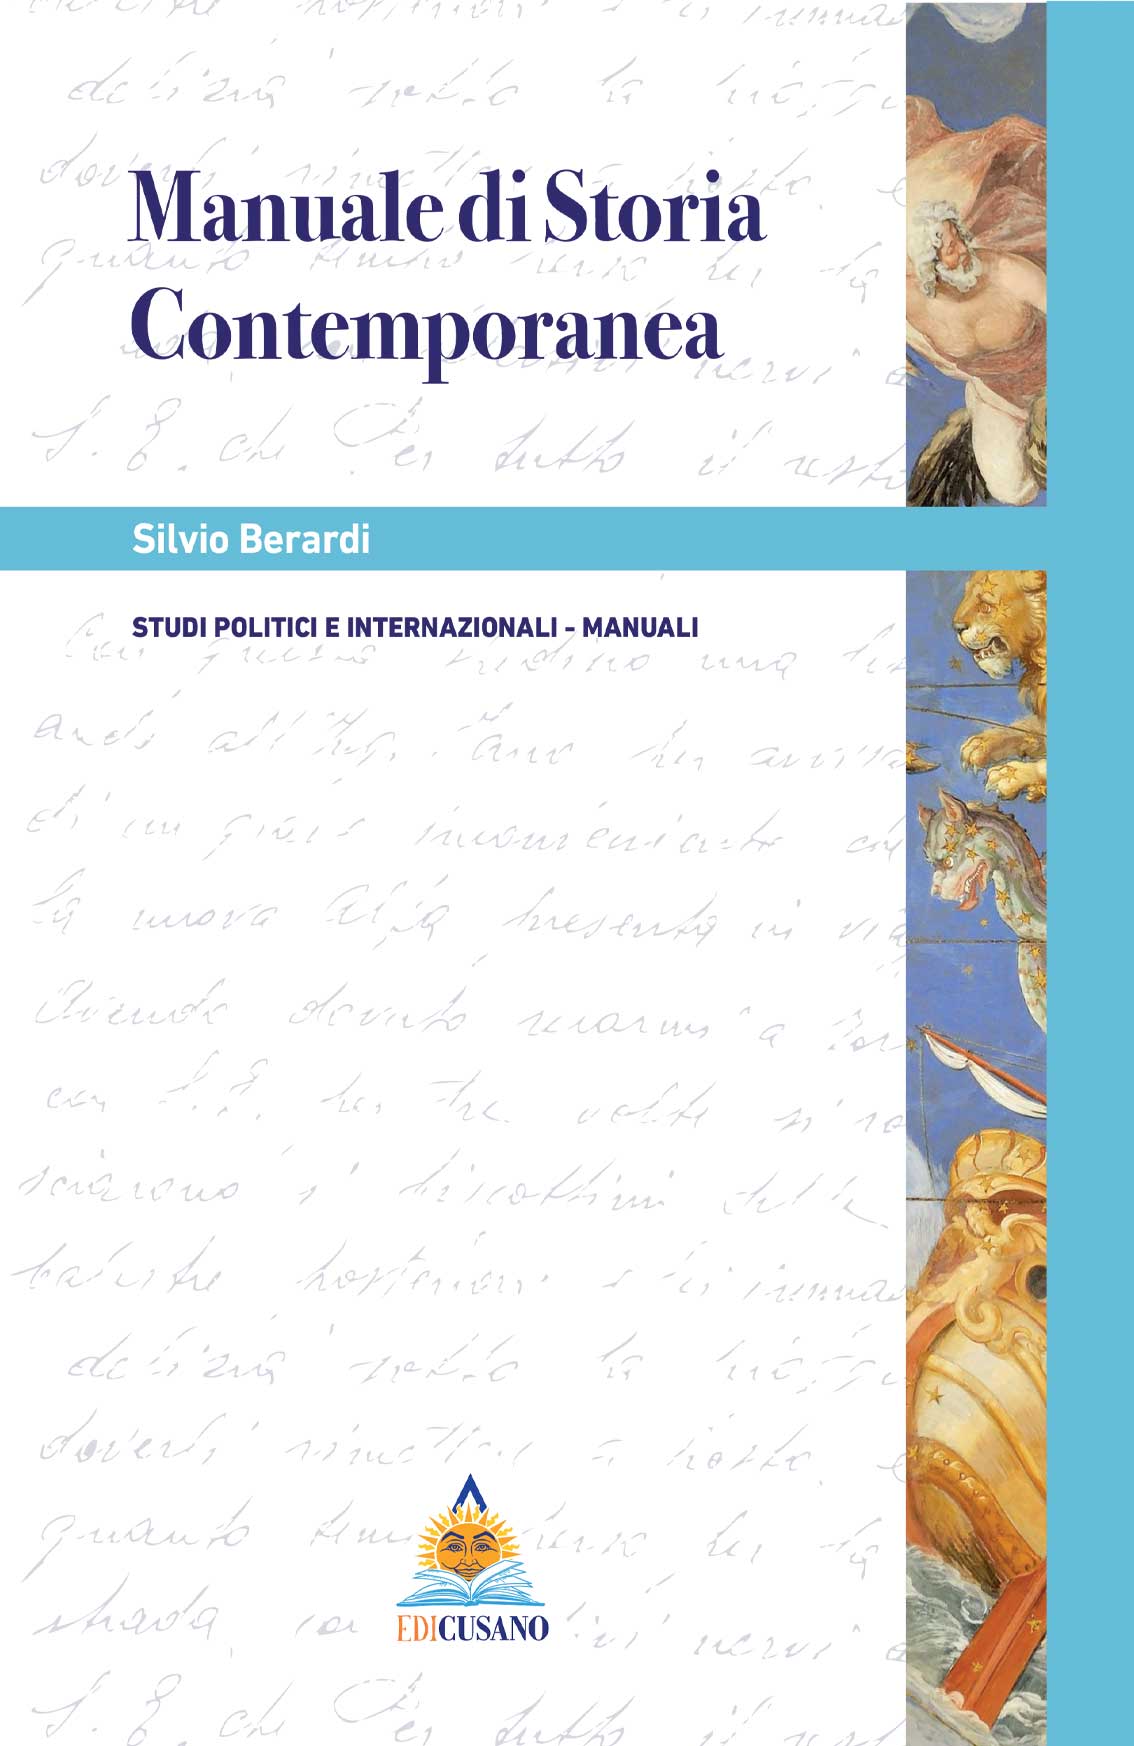 Manuale di Storia Contemporanea - Edicusano